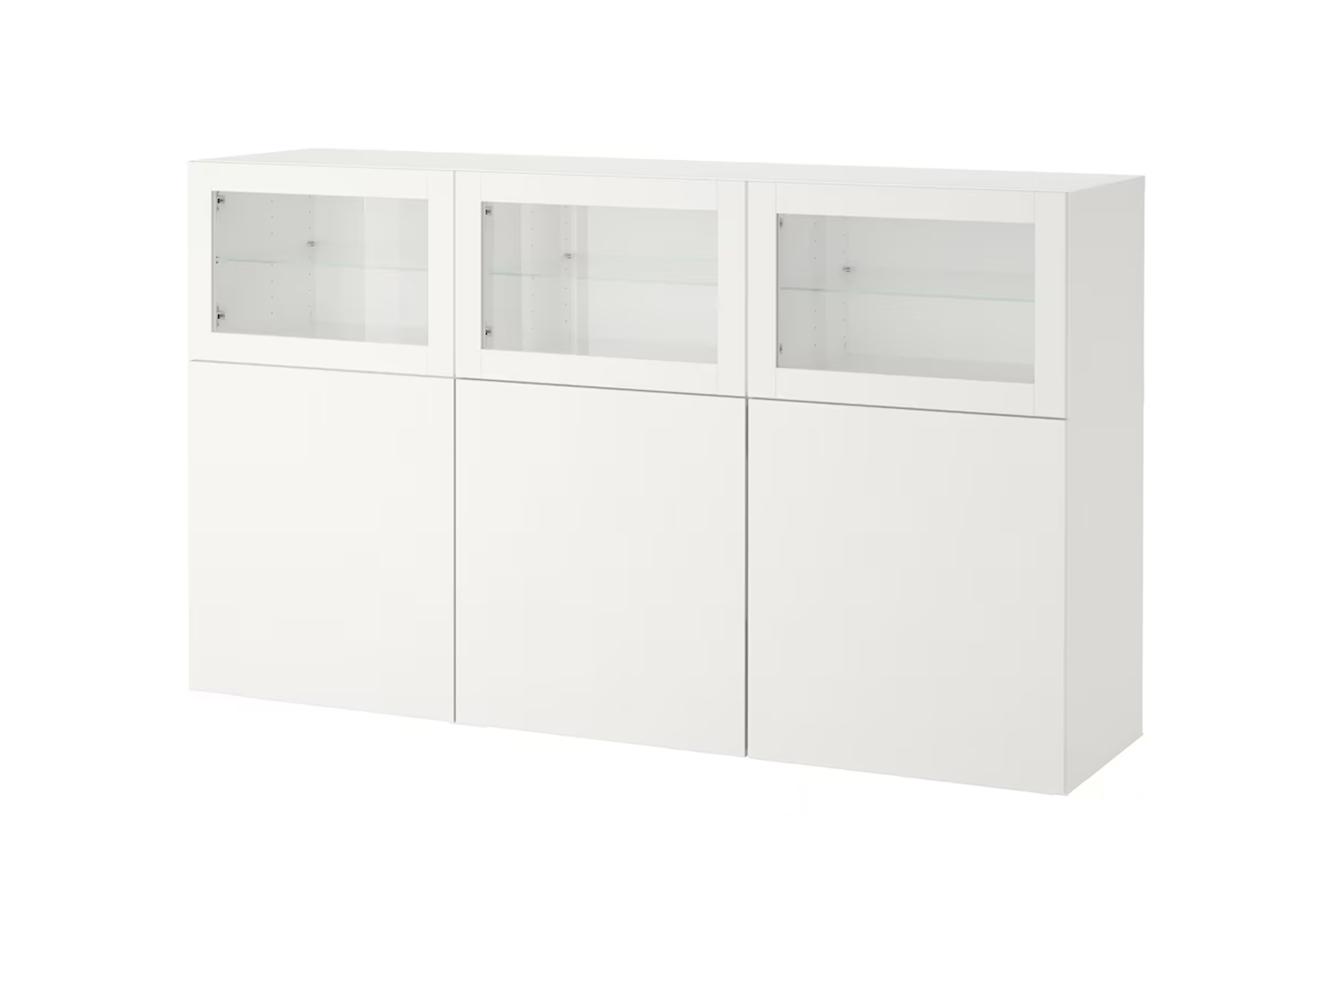 Буфет Беста 318 white ИКЕА (IKEA) изображение товара